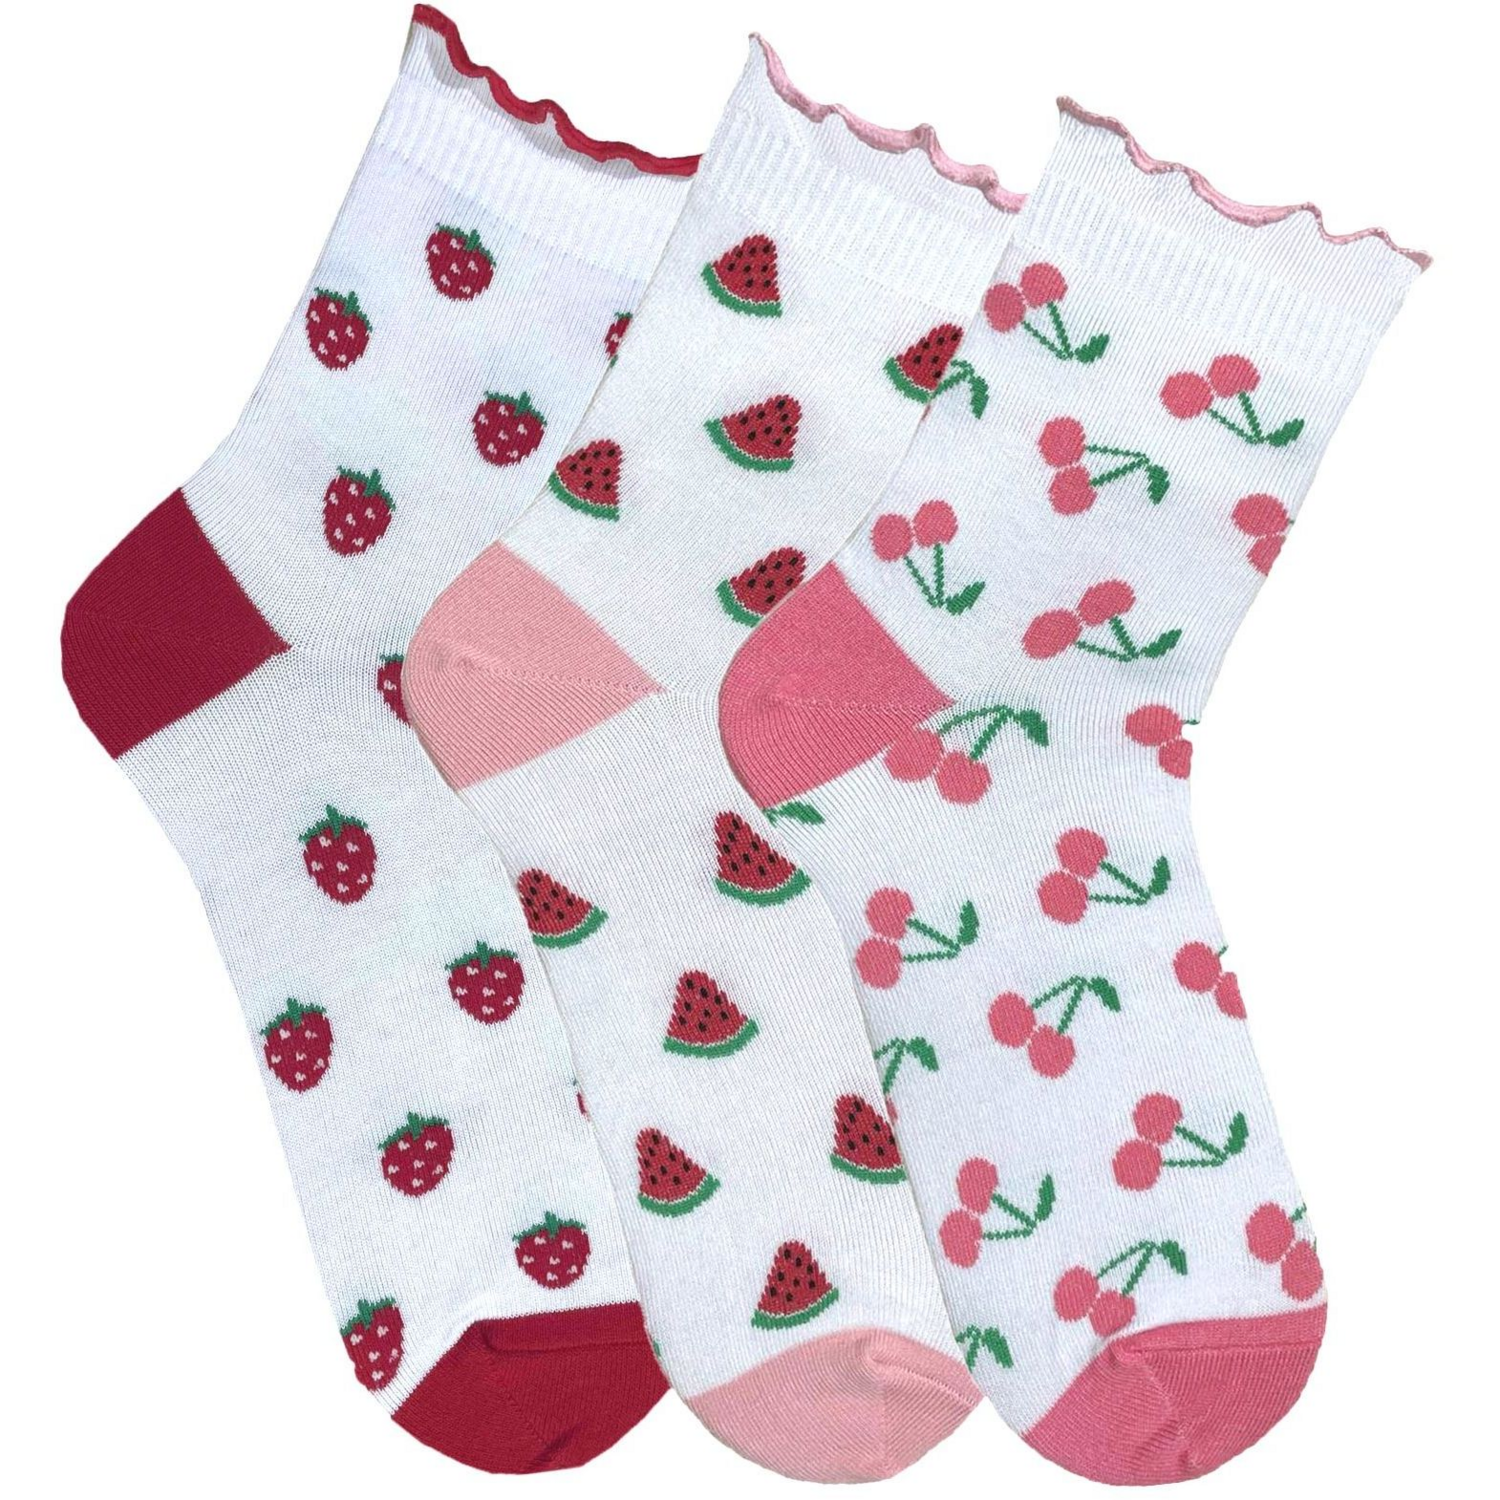 Набір жіночих шкарпеток Premier Socks 36-40 3 пари білі з принтом Ягоди (4820163319186)фото